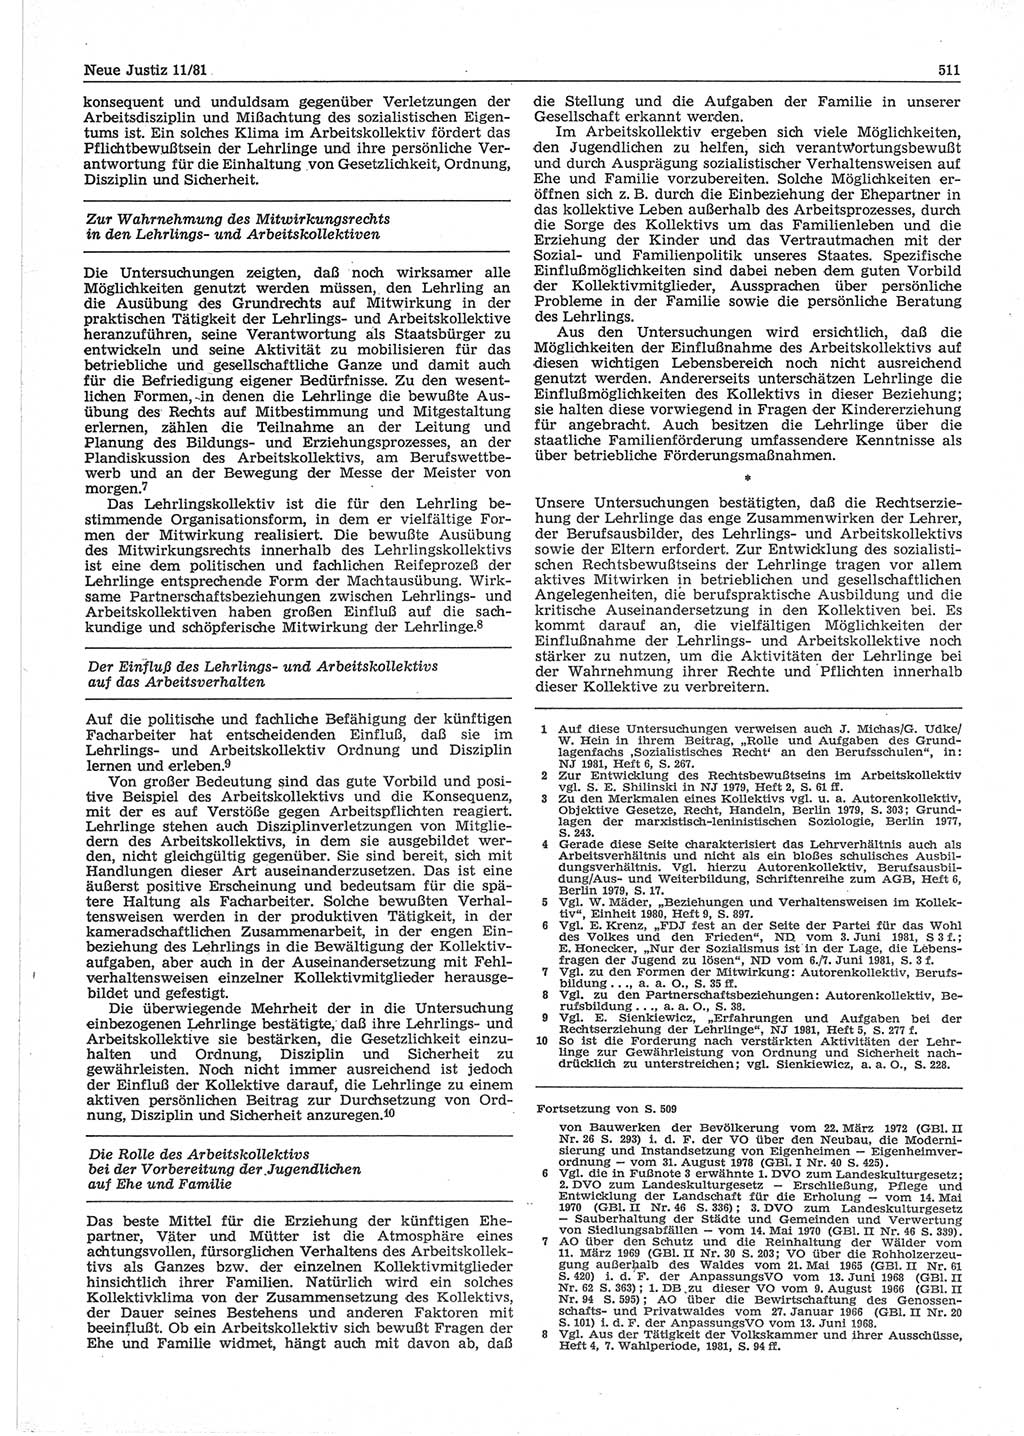 Neue Justiz (NJ), Zeitschrift für sozialistisches Recht und Gesetzlichkeit [Deutsche Demokratische Republik (DDR)], 35. Jahrgang 1981, Seite 511 (NJ DDR 1981, S. 511)